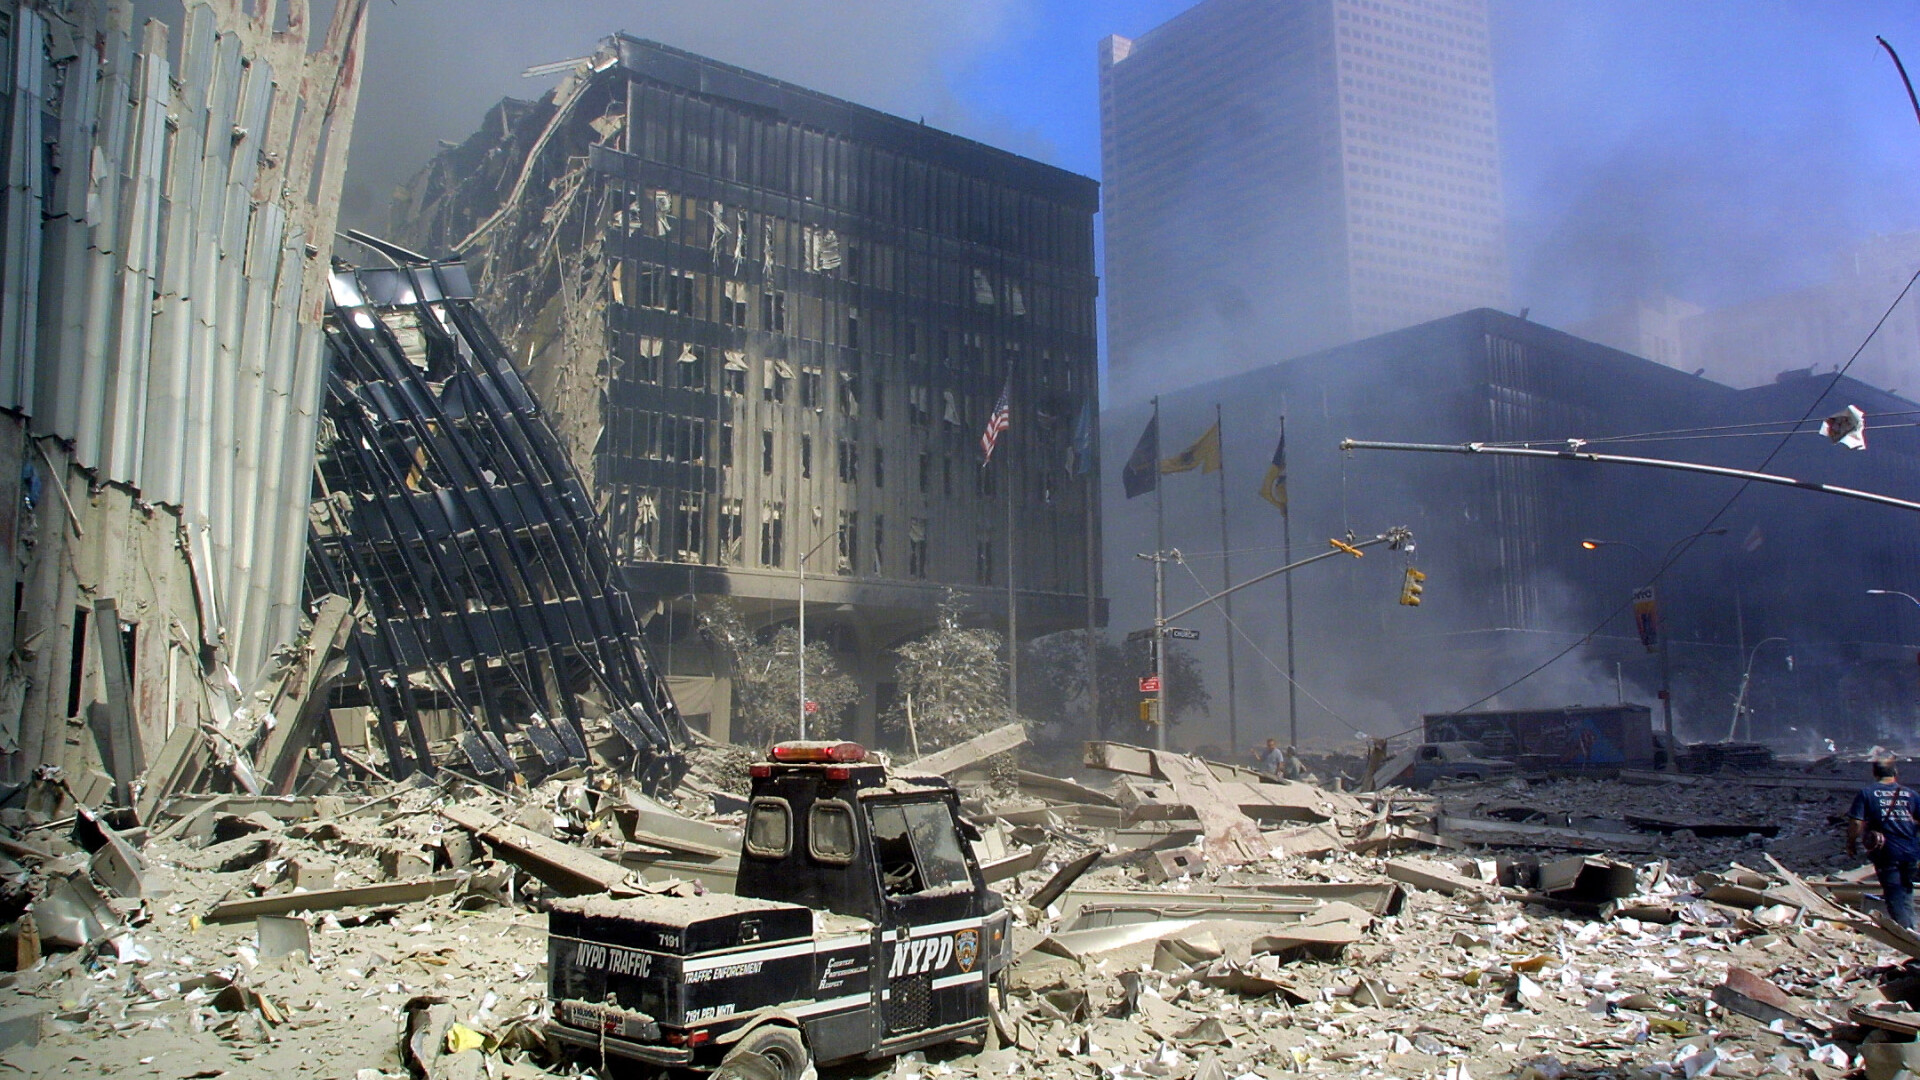 Au trecut 17 ani de la atentatele din 11 septembrie. Aproape 3000 de oameni au murit